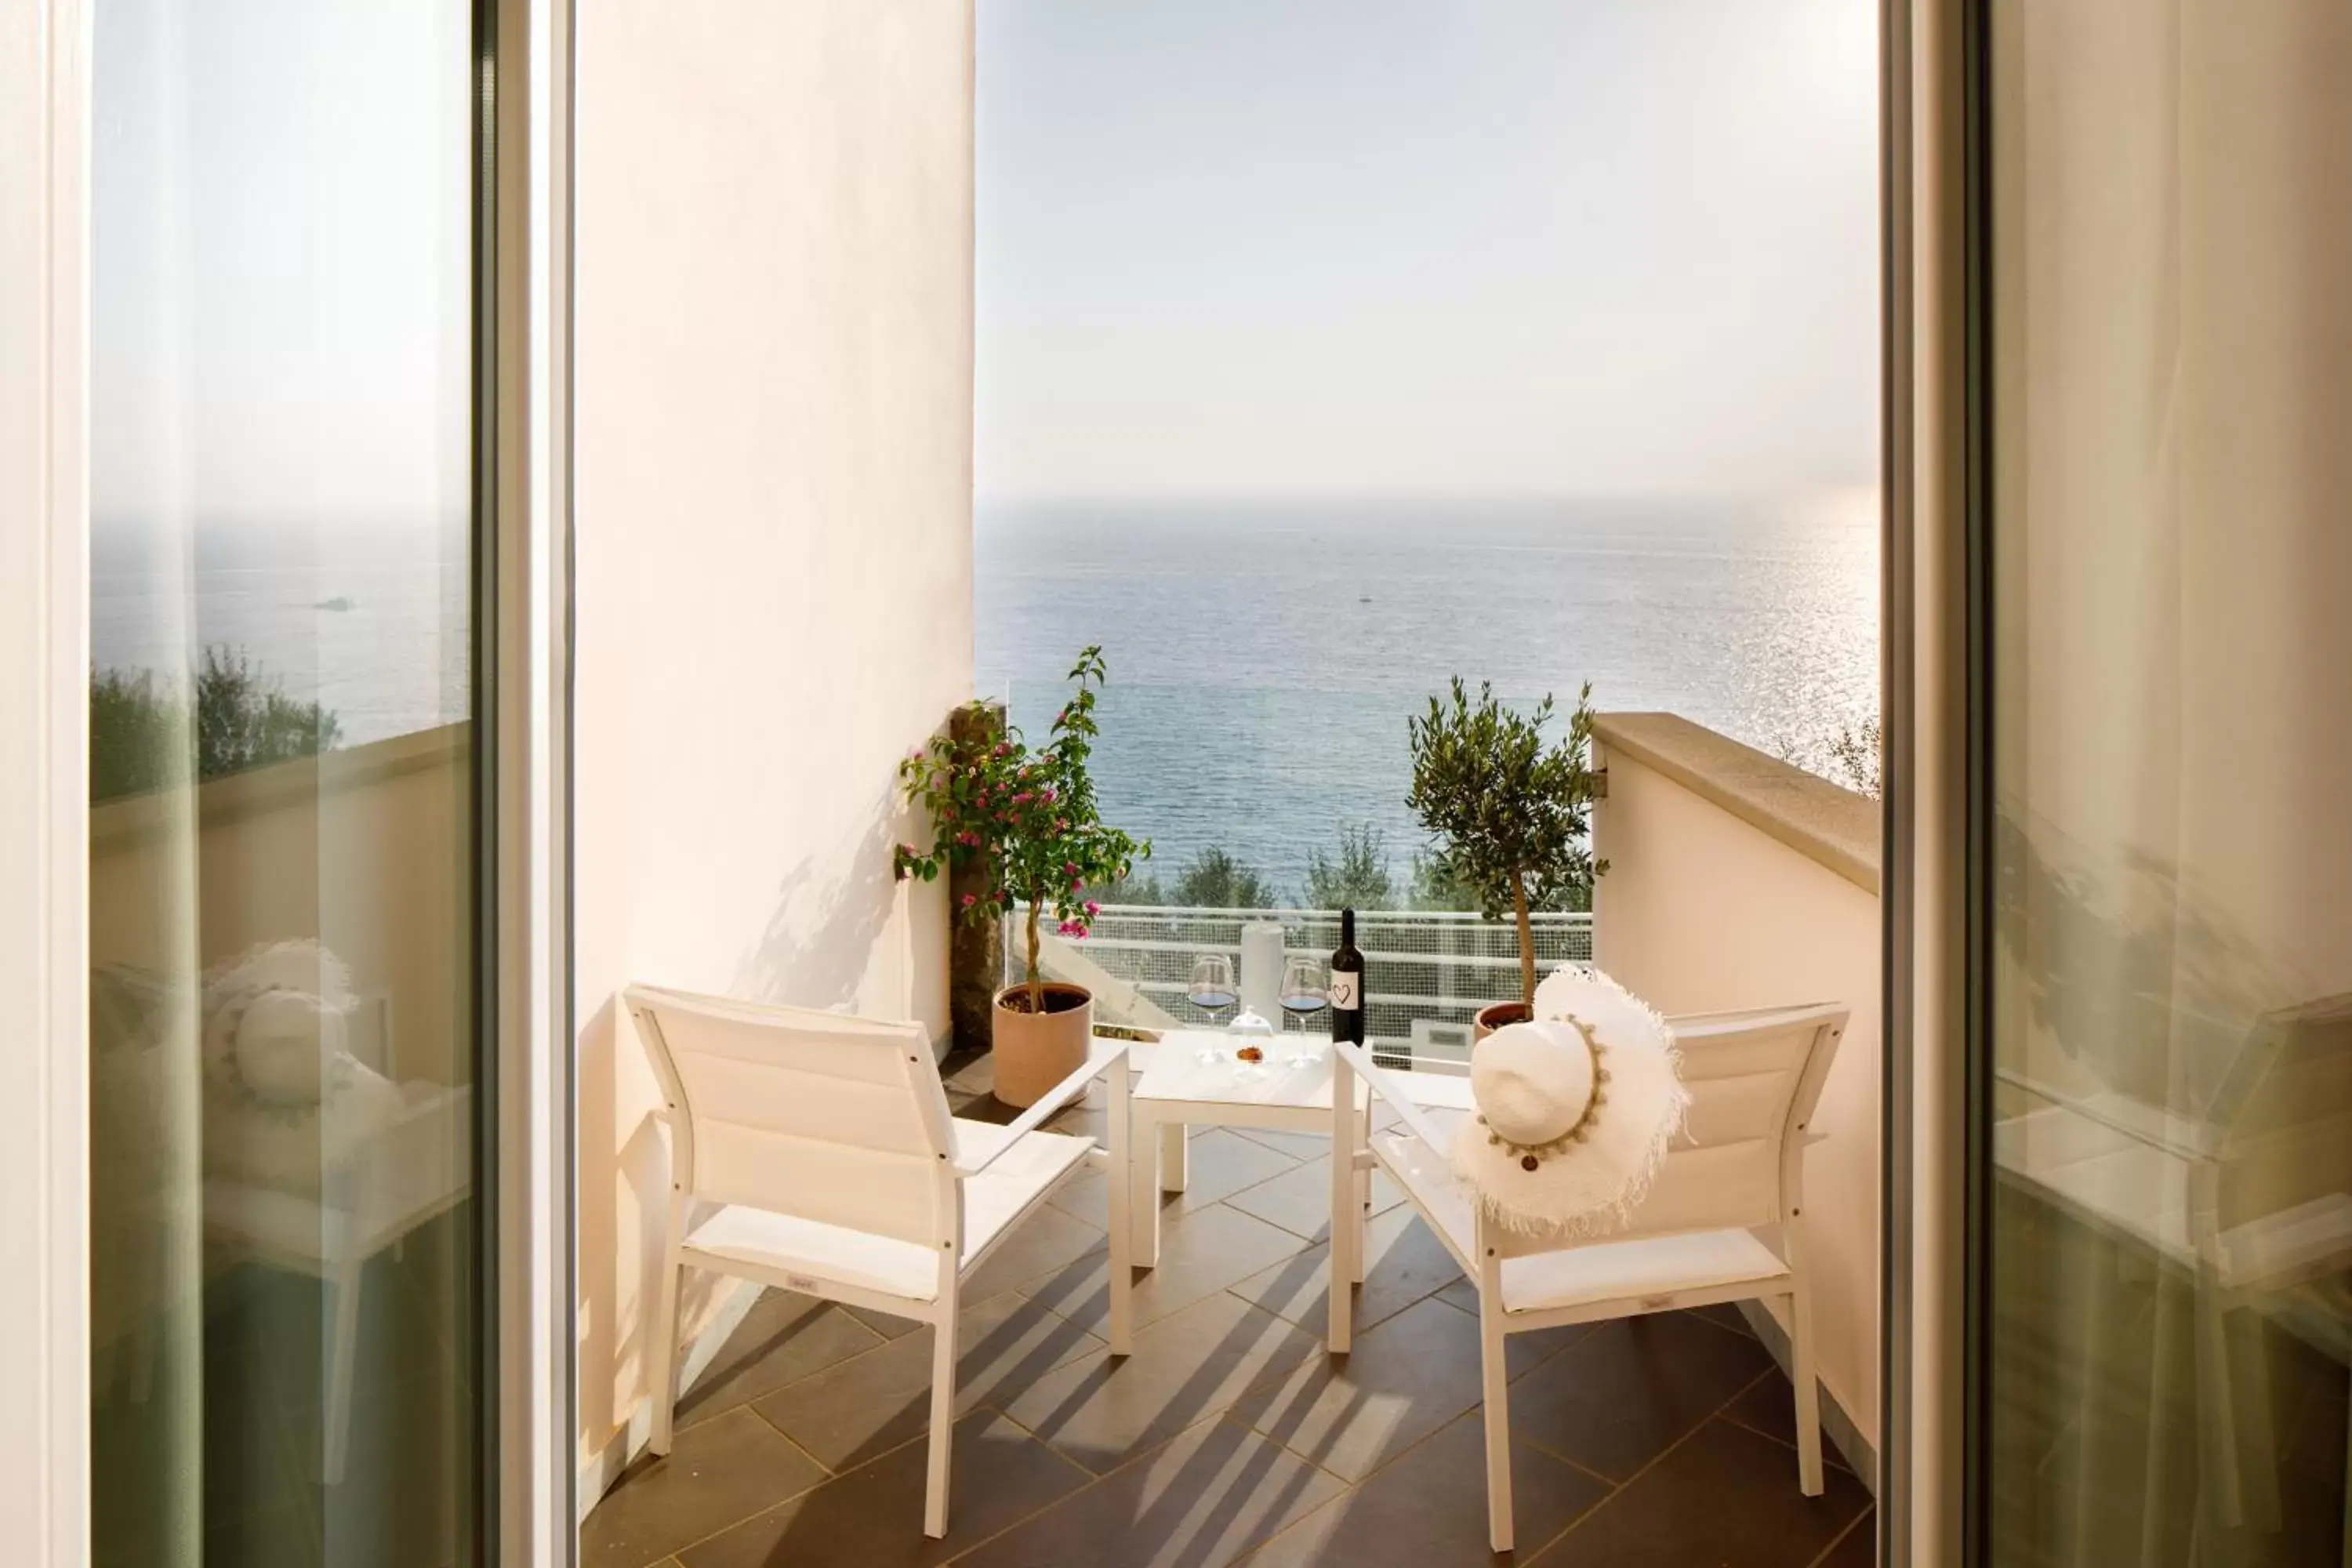 Sea view in Villa Fiorella Art Hotel